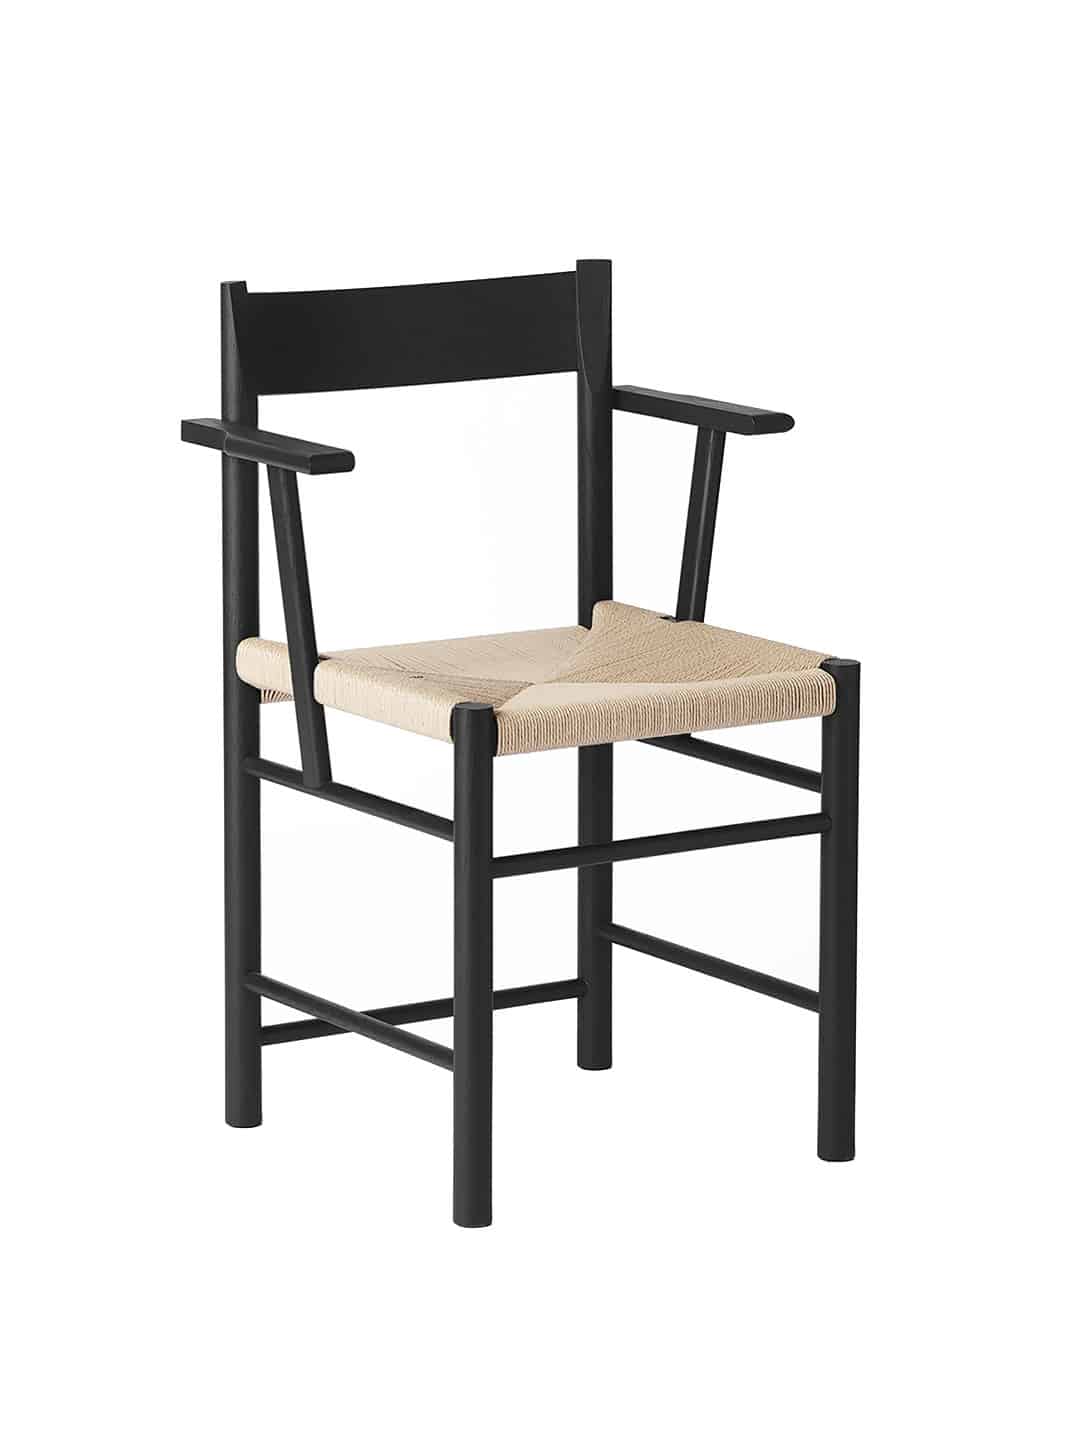 Оригинальный обеденный стул Brdr. Kruger F-Chair с подлокотниками из черного ясеня